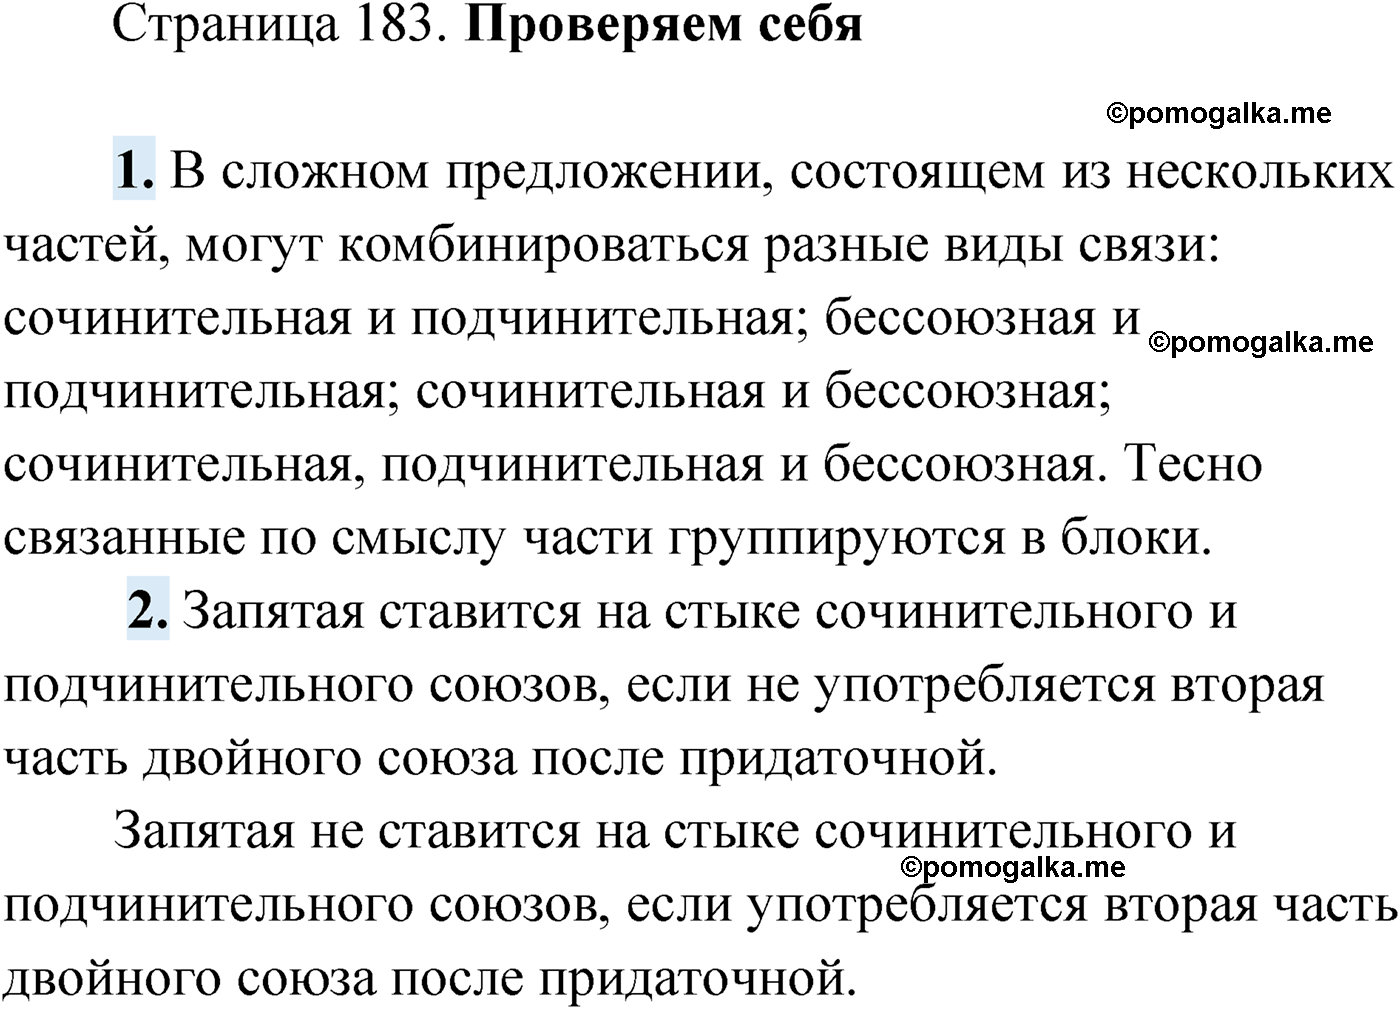 Проверь себя, Страница 183 русский язык 9 класс Мурина 2019 год